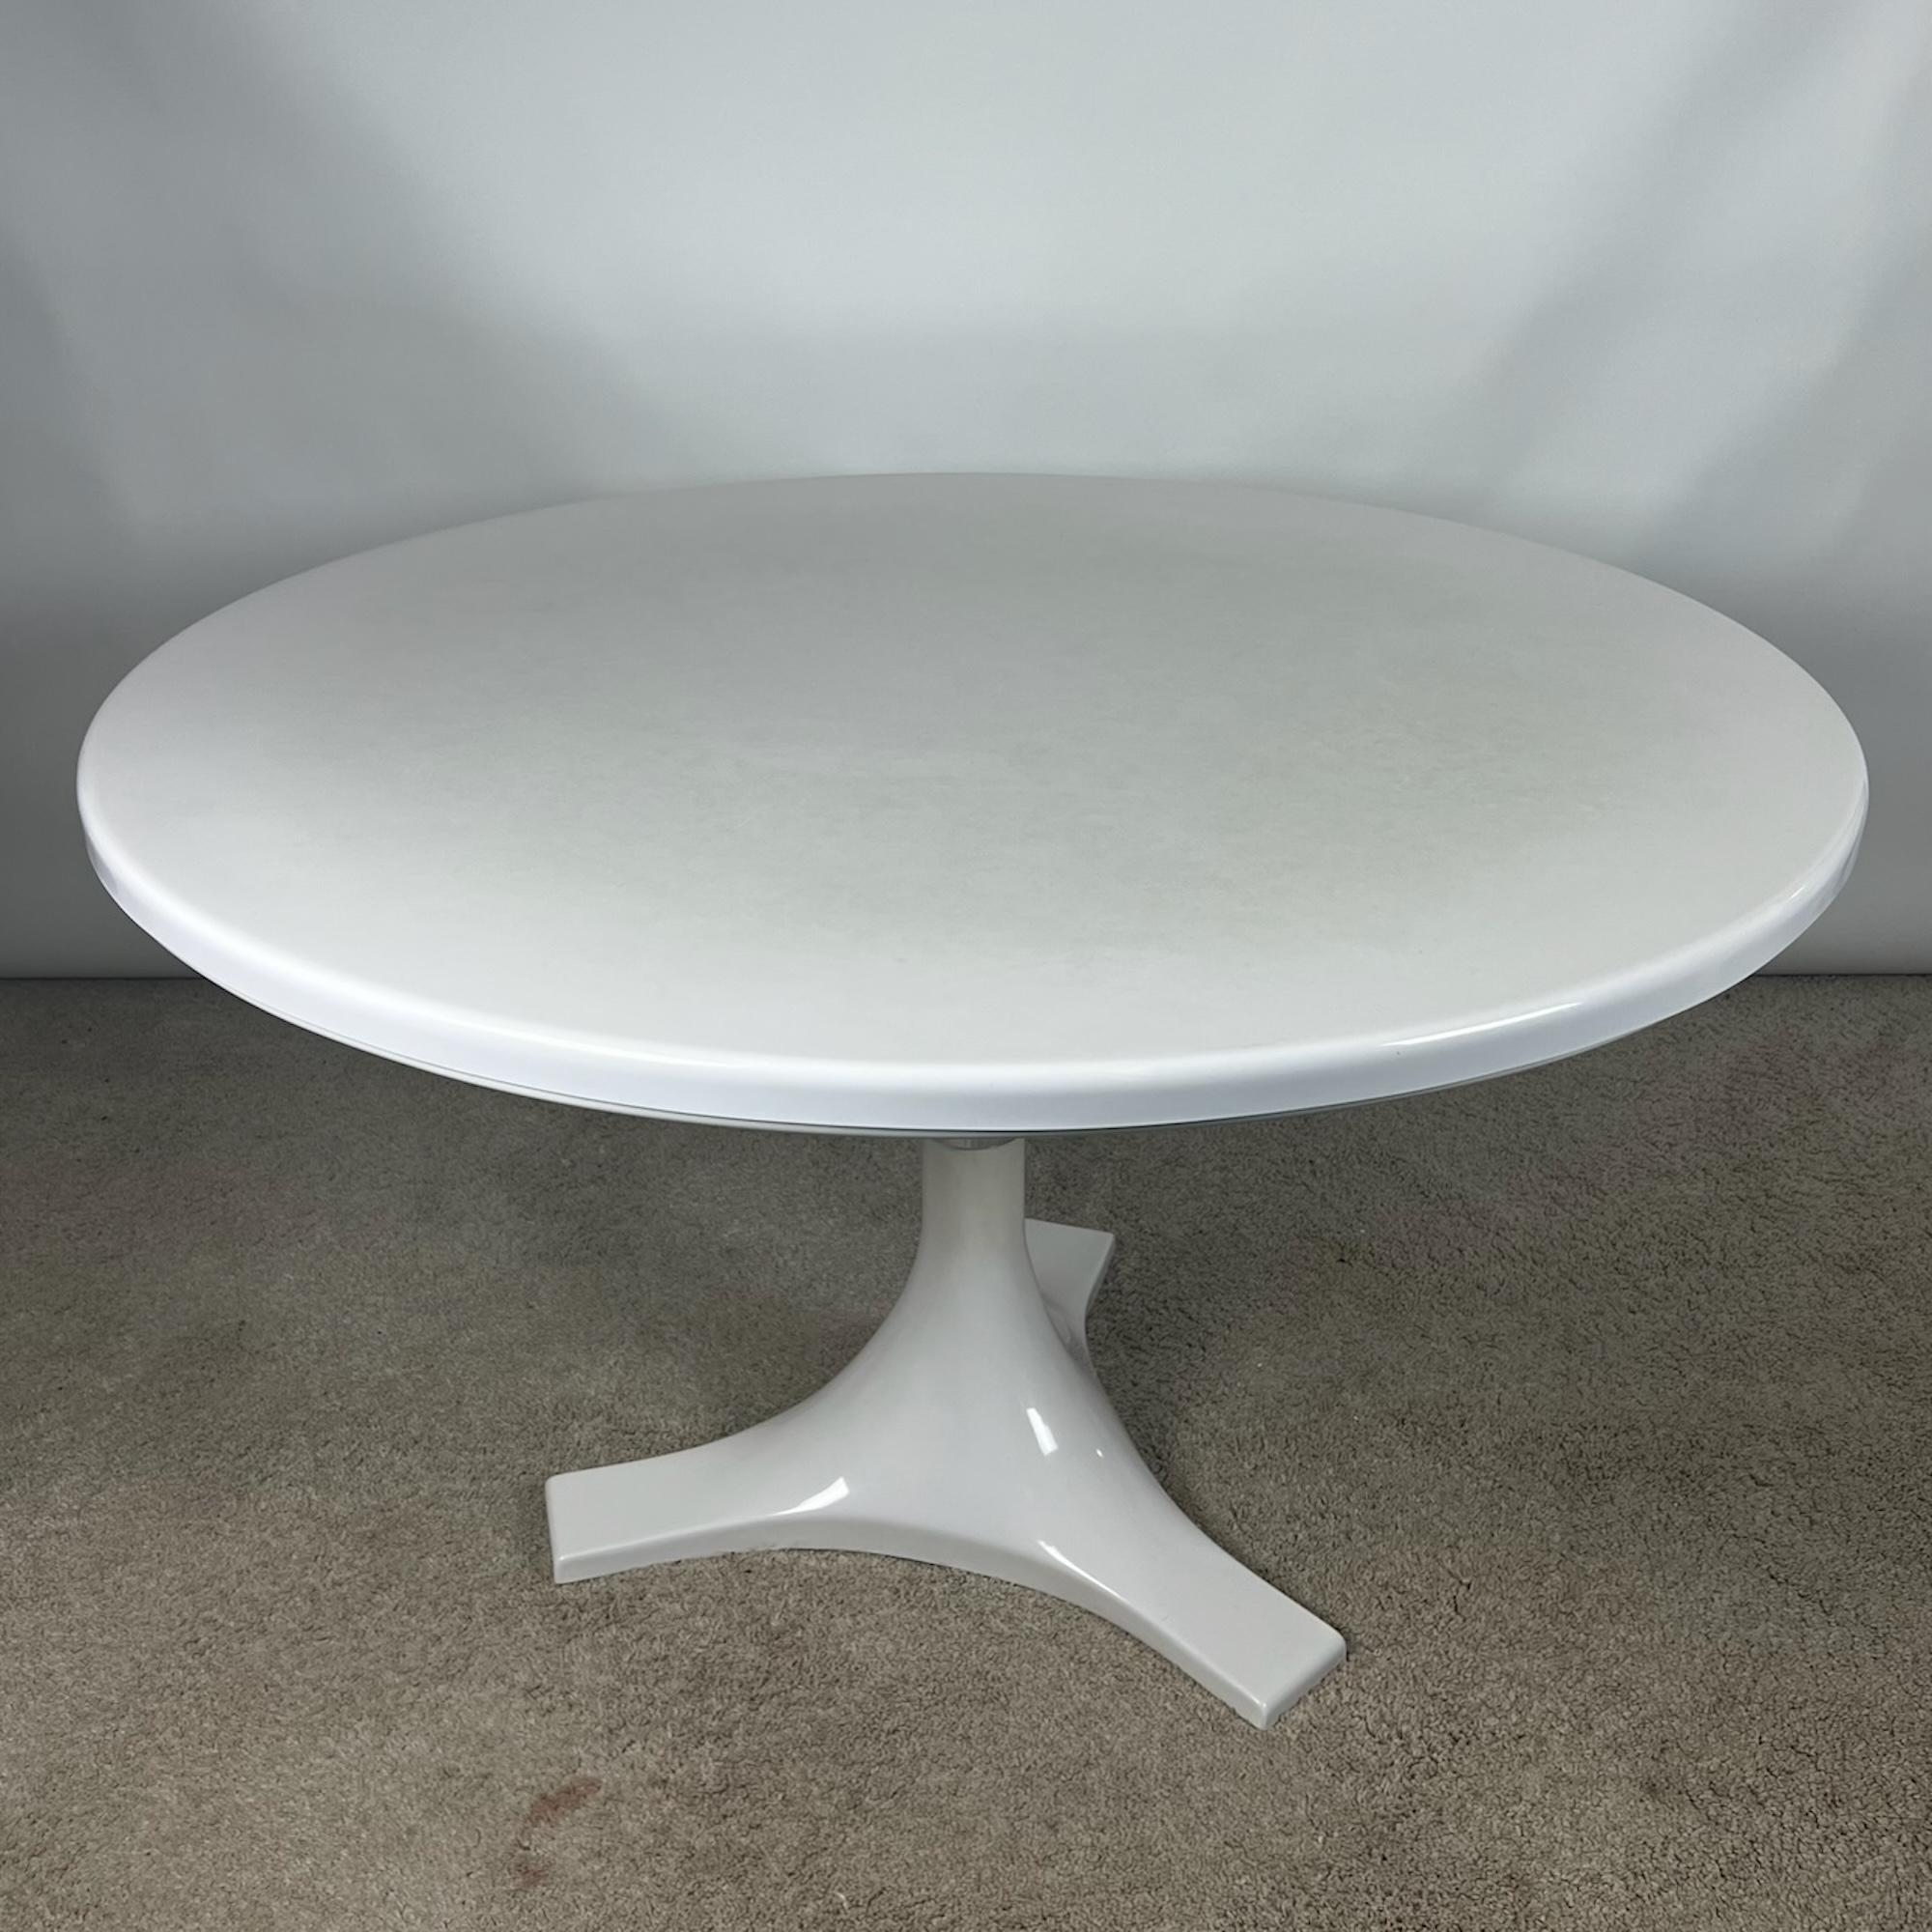 Schöner und ikonischer runder Tisch, entworfen von Ignazio Gardella und Anna Castelli Ferrieri für Kartell in den 60er Jahren.

Dieser große Tisch, Modell 4997, ist aus schwerem weißen Harz gefertigt. Die Tischplatte ist auf einem Stativfuß